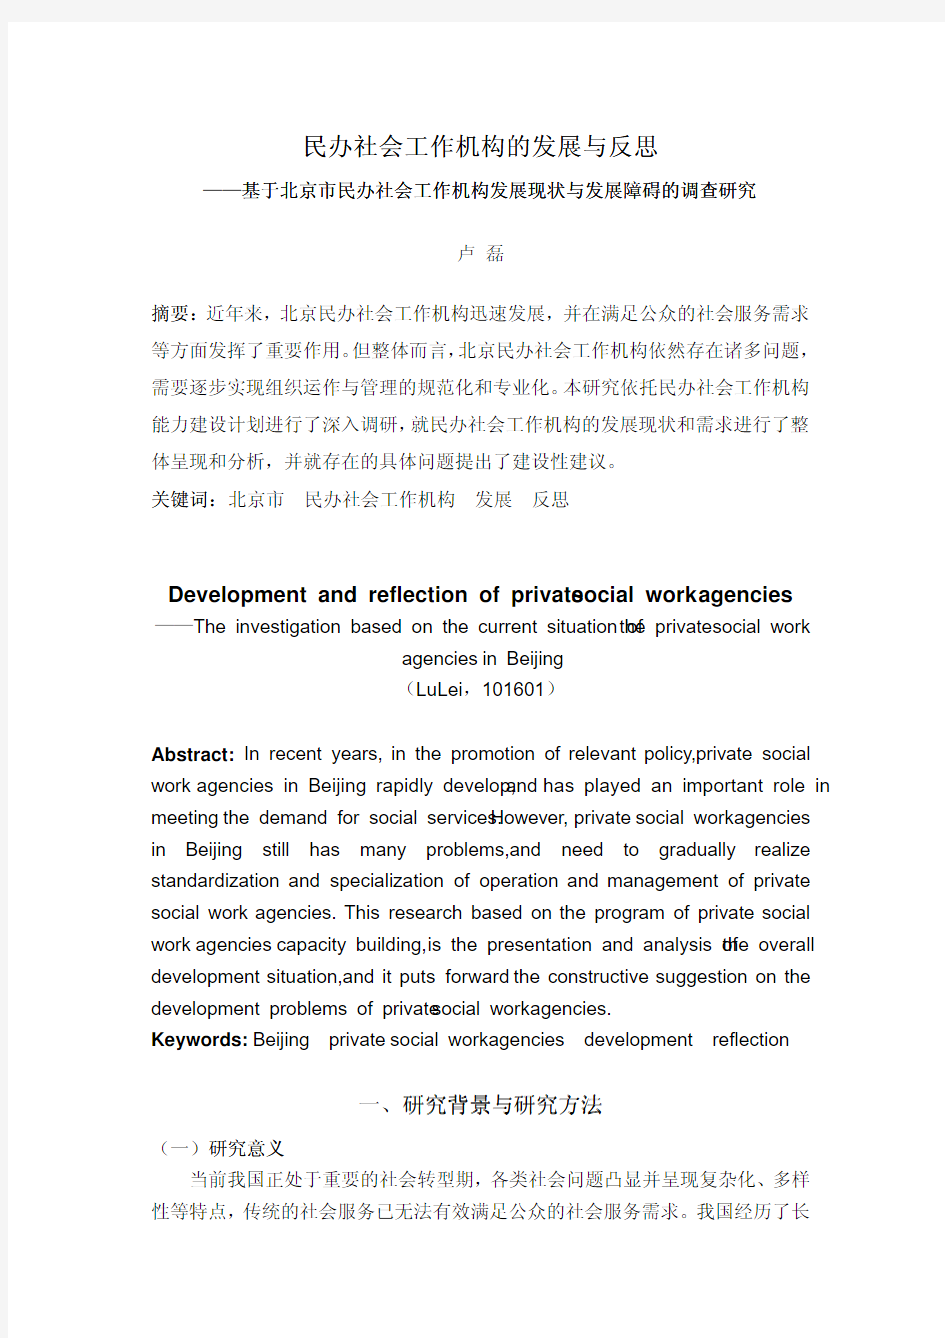 民办社会工作机构的发展与反思——基于北京市民办社会工作机构发展现状与发展障碍的调查研究